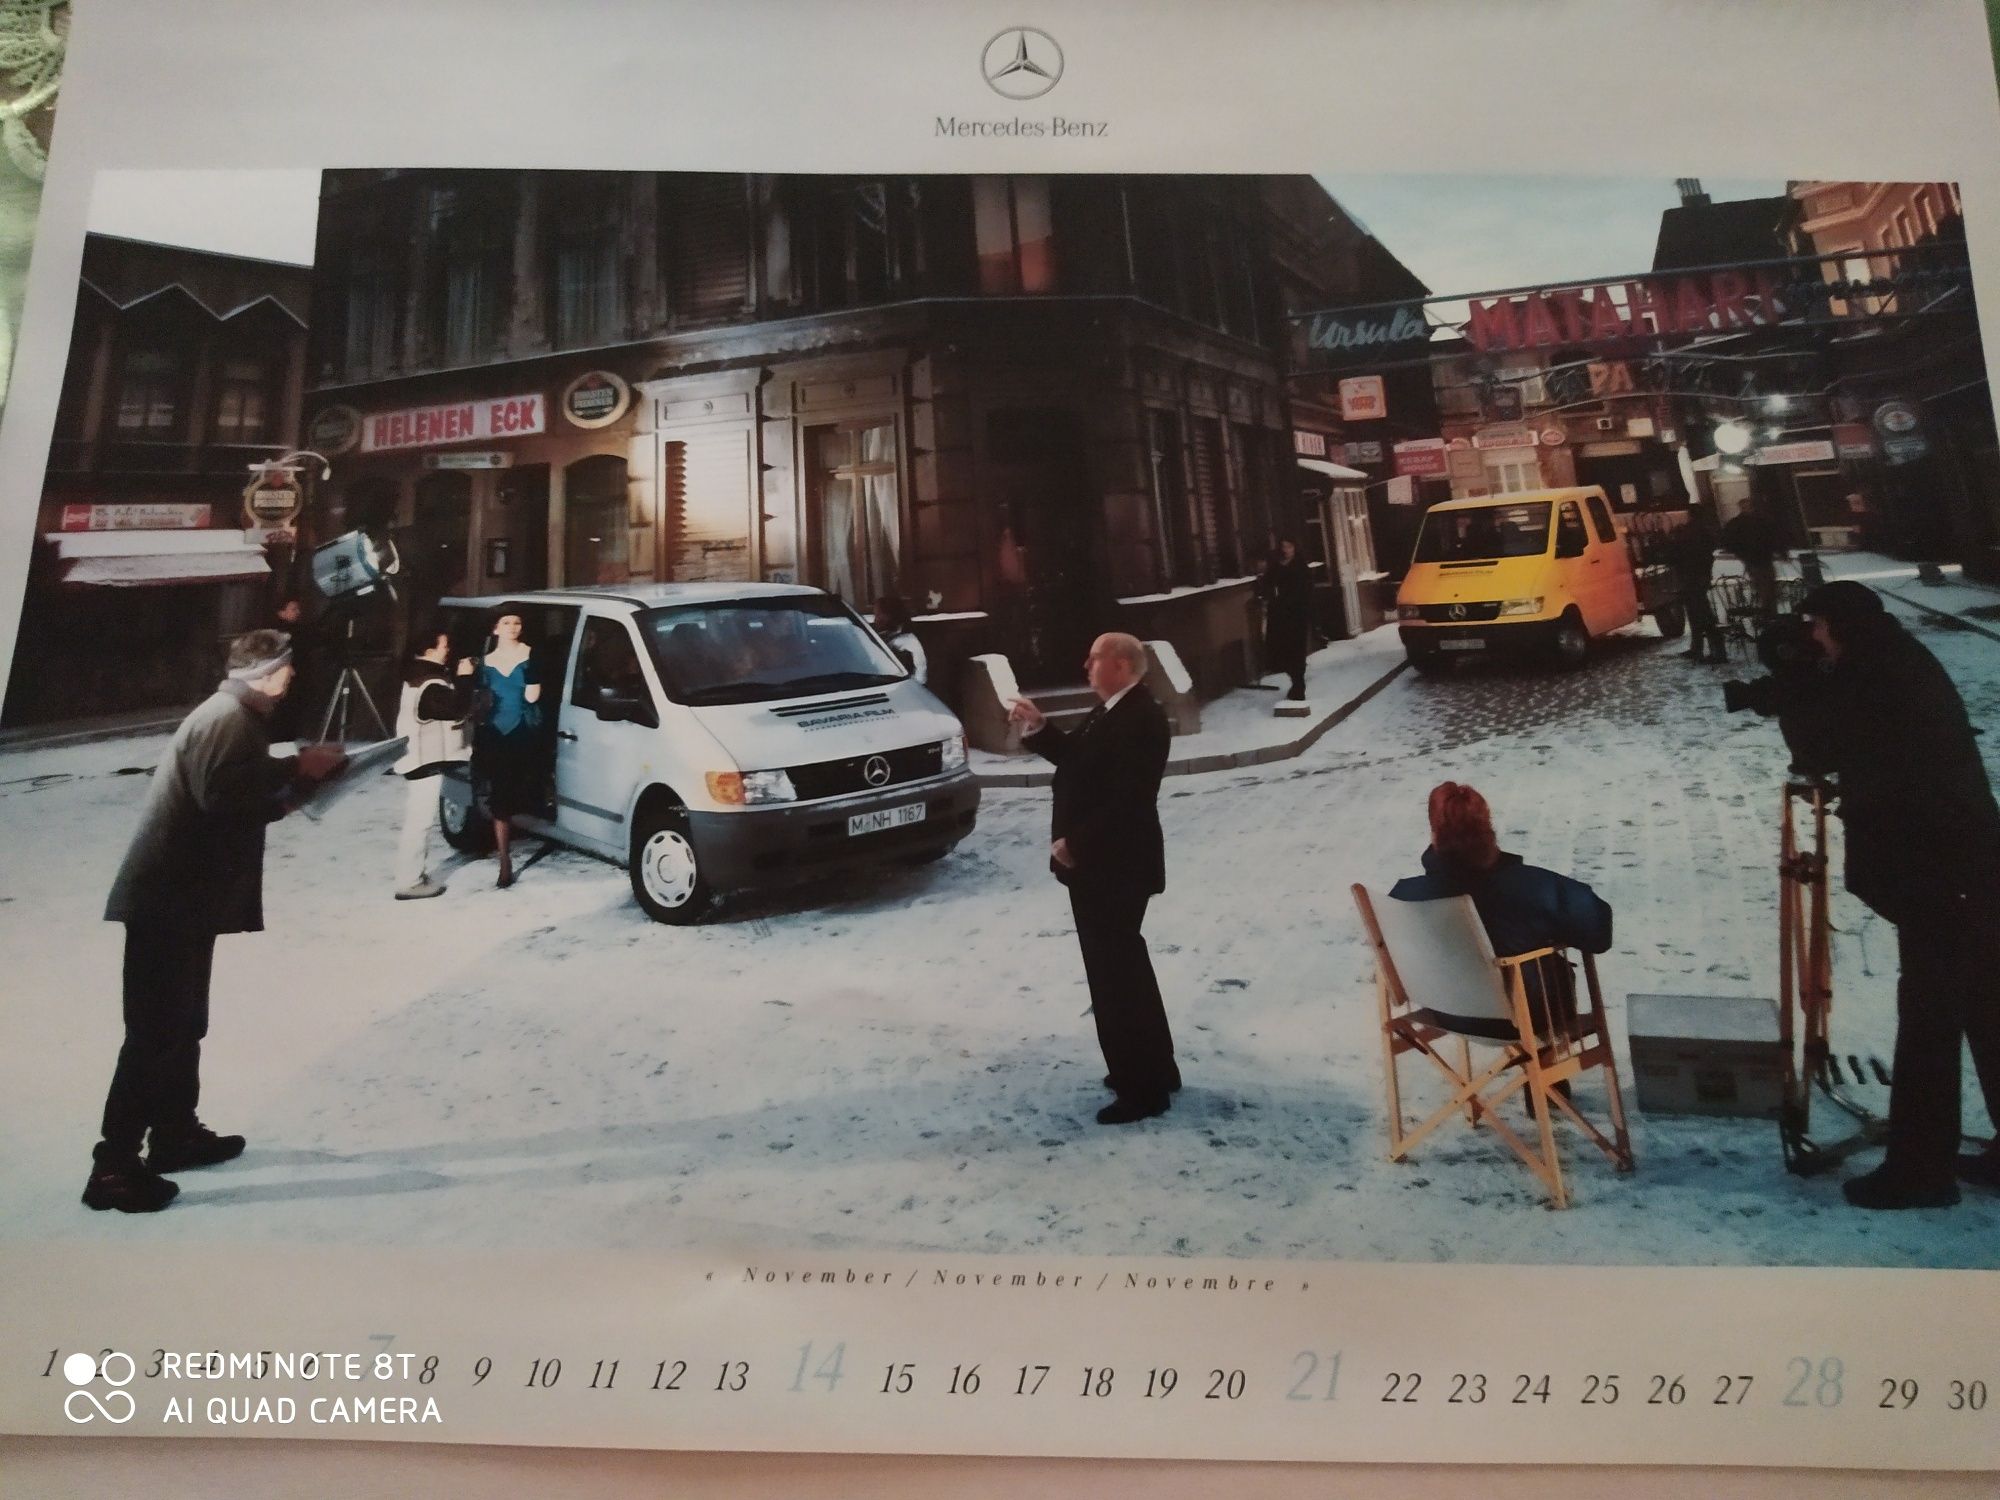 Kalendarz Mercedes 1999 r.